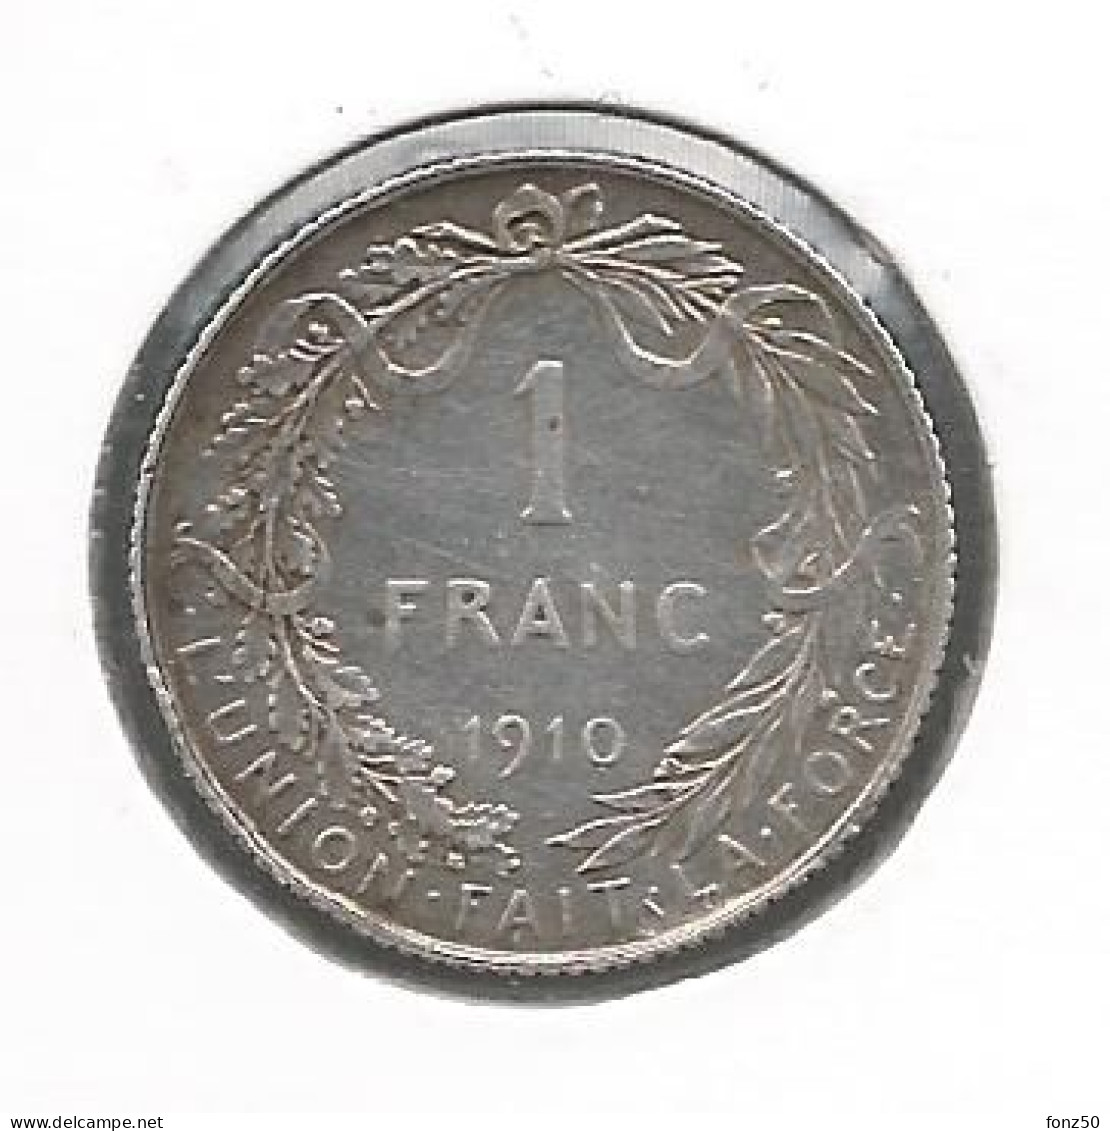 ALBERT I * 1 Frank 1910 Frans * Prachtig * Nr 11498 - 1 Frank